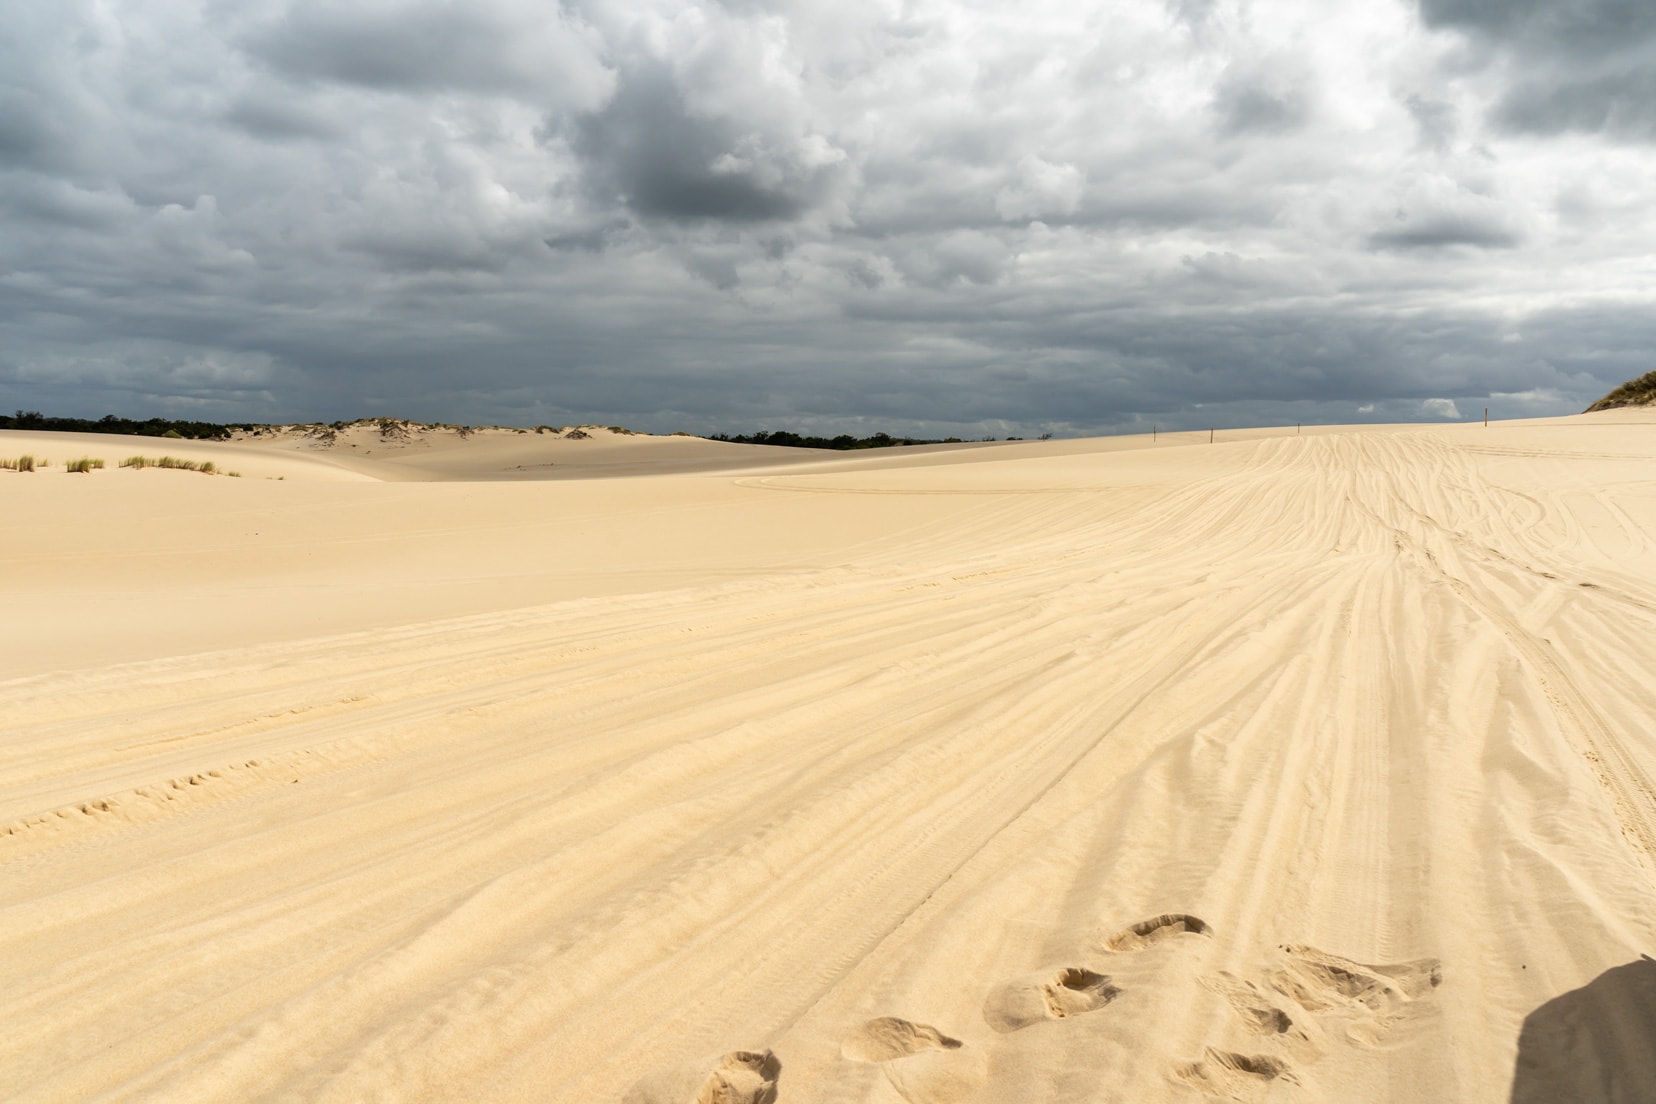 Yeagarup rolling dunes